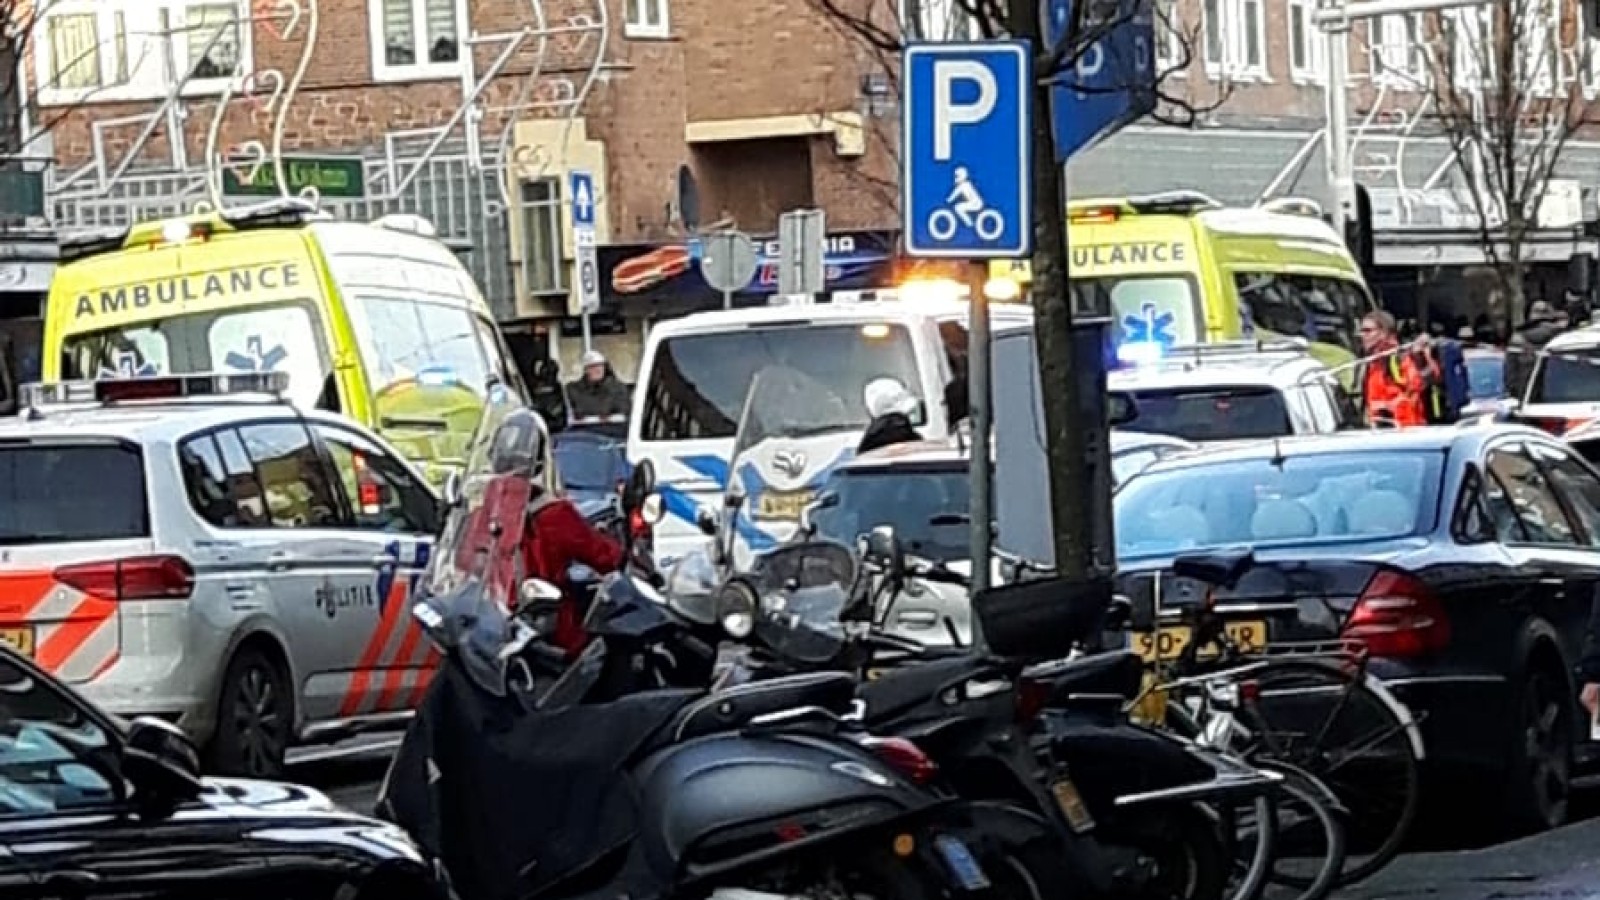 Ernstig ongeval met GVB-bus in Jan Evertsenstraat